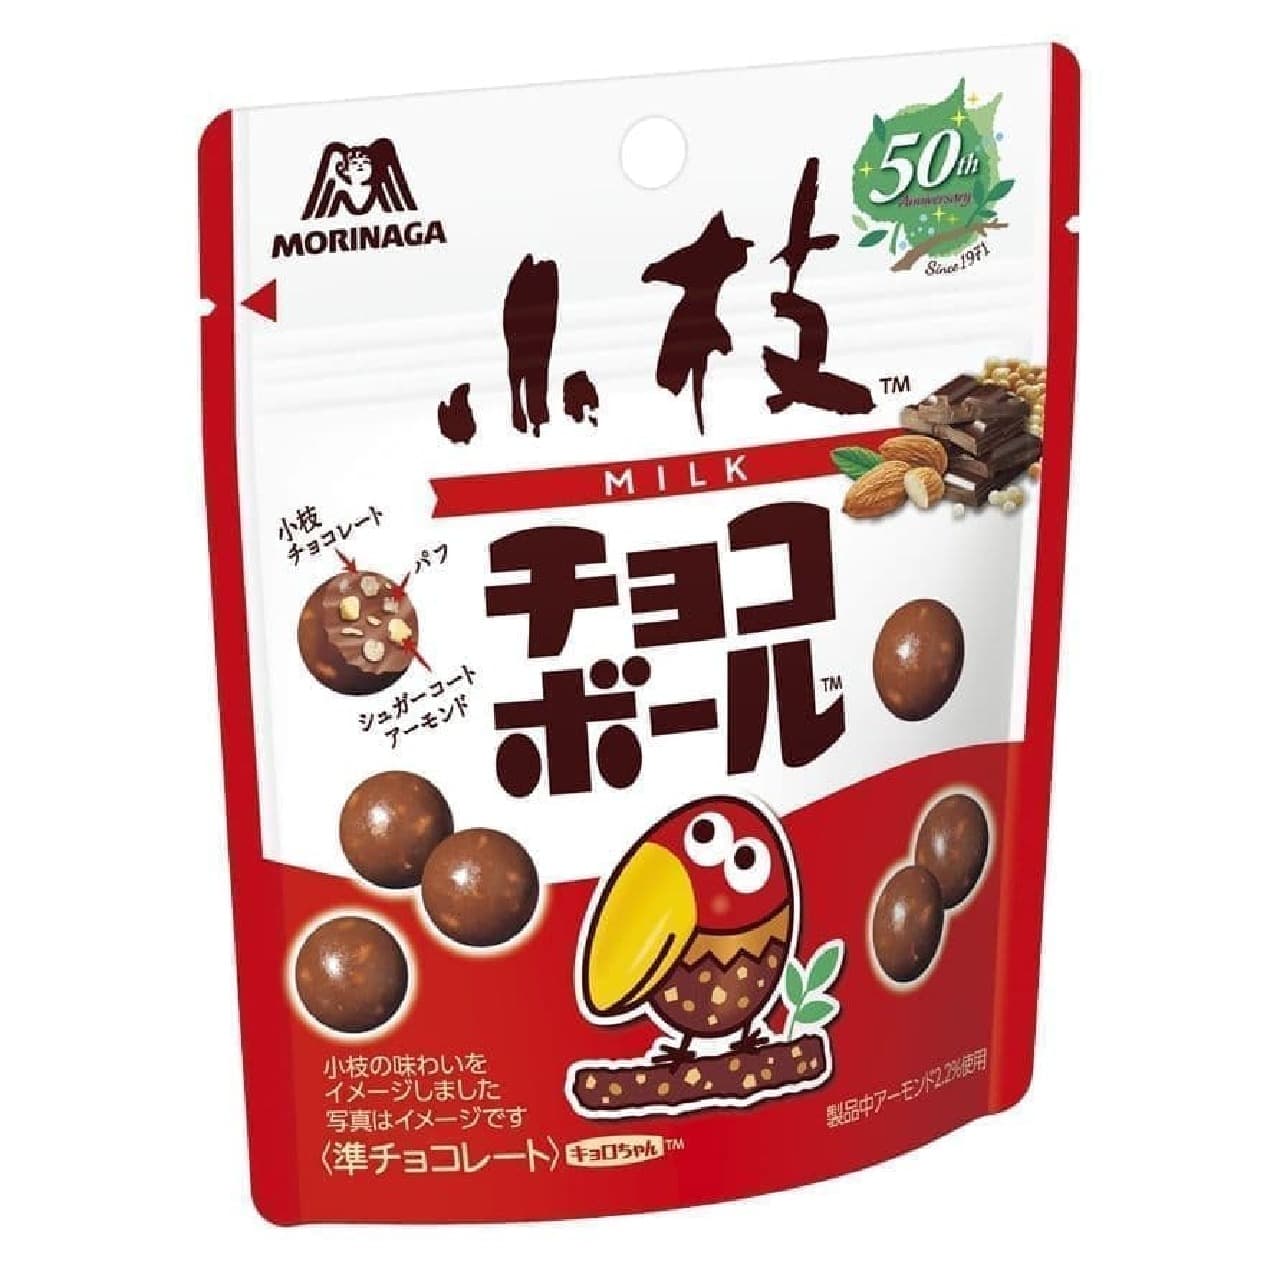 Morinaga & Co. "Twig chocolate ball"